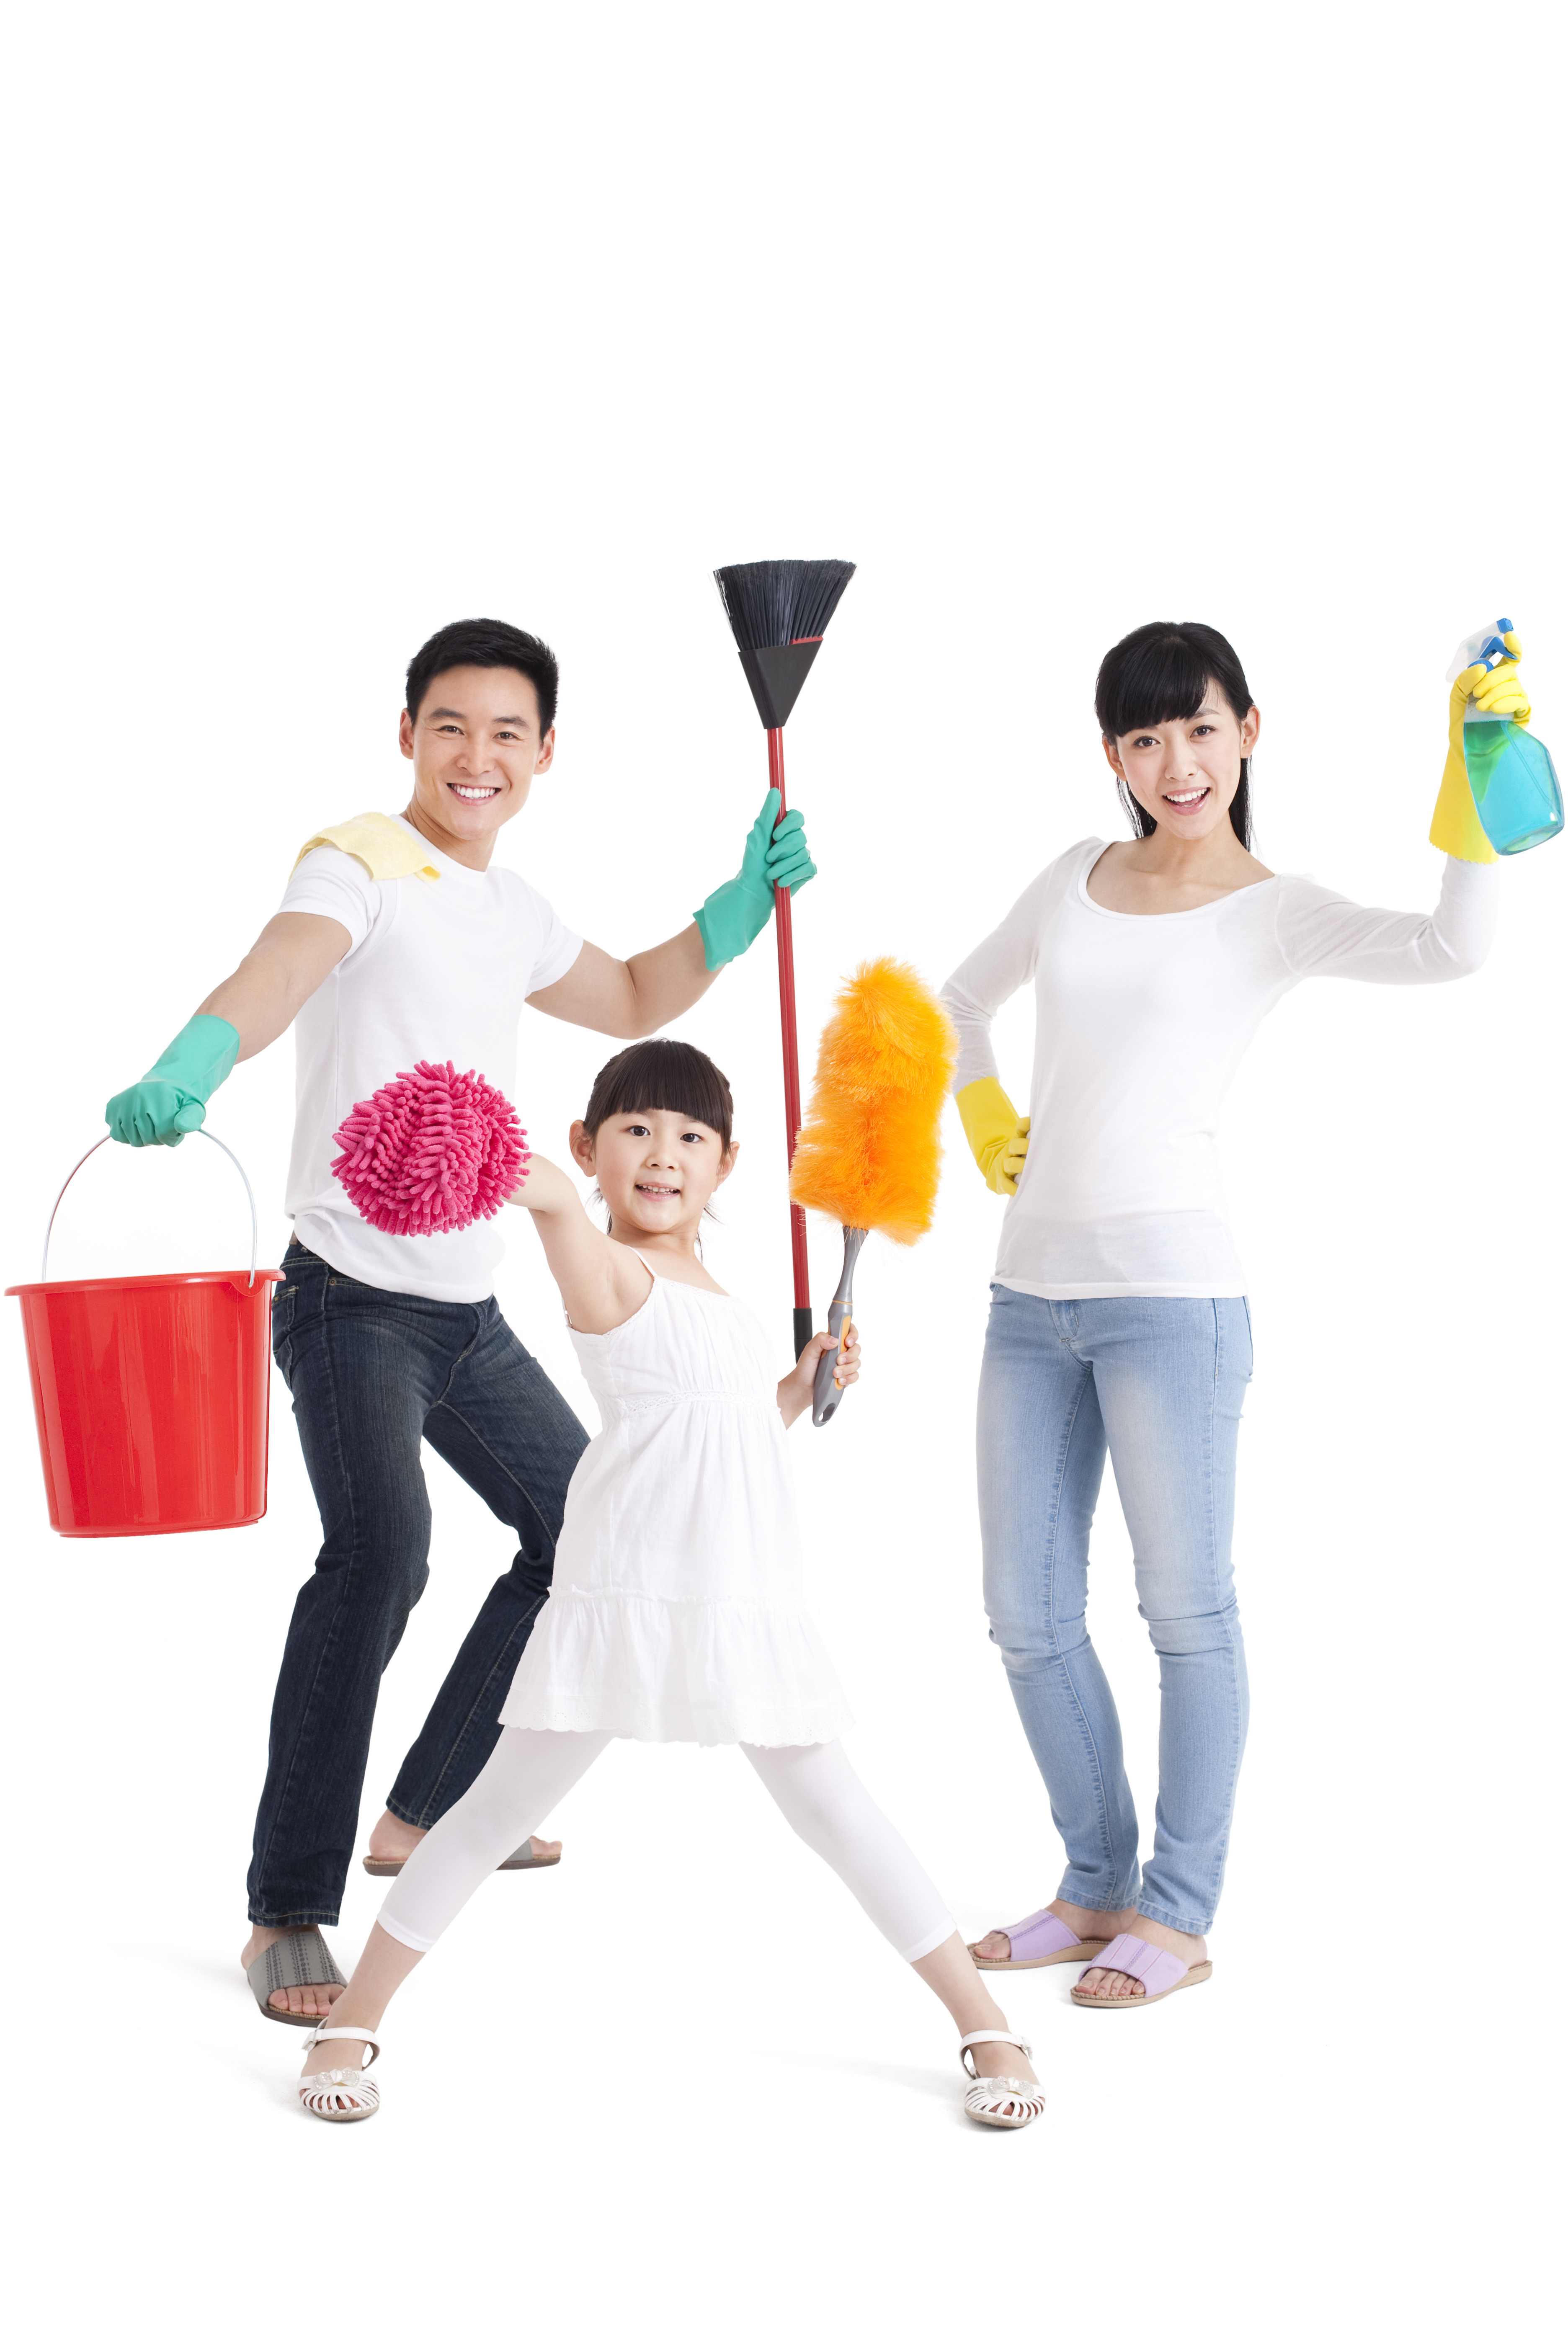 Çocukları Ev İşleri Yapmaya Alıştırmak İçin 6 İpucu